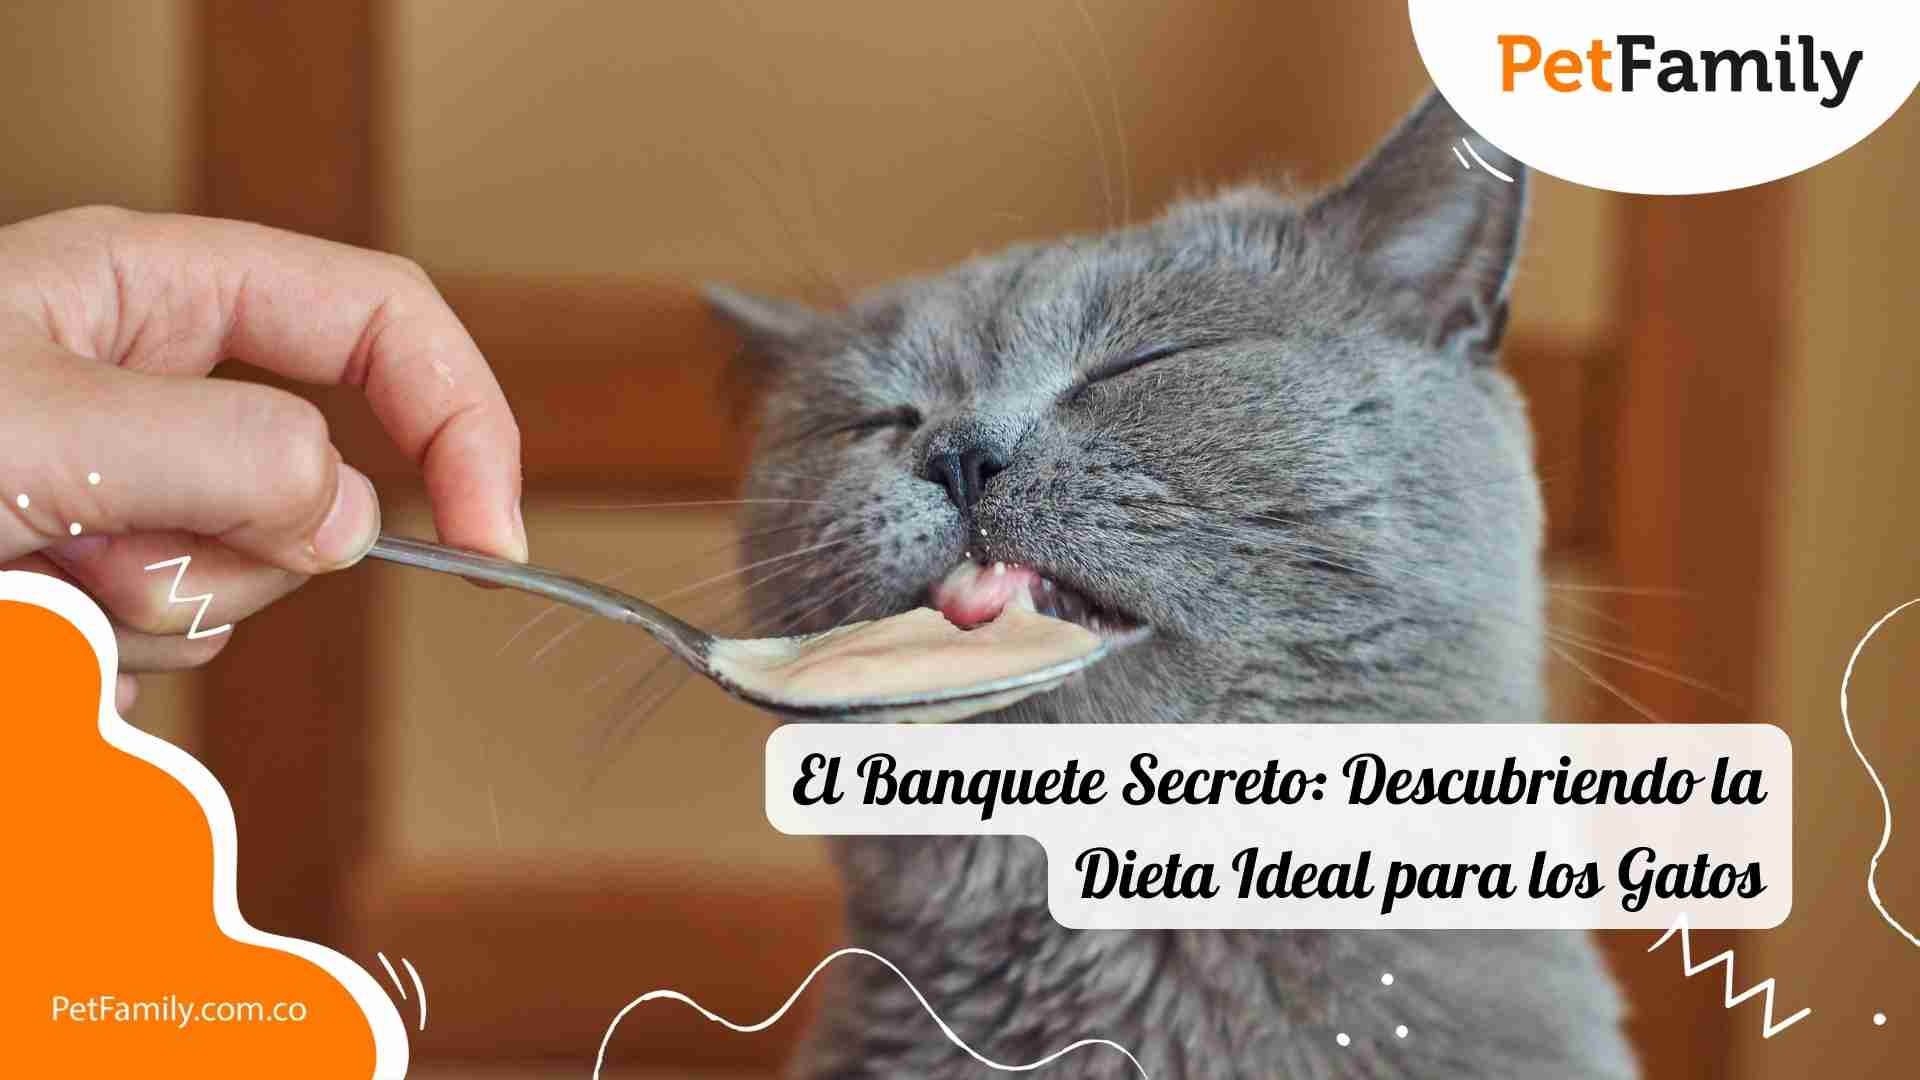 El Banquete Secreto: Descubriendo la Dieta Ideal para los Gatos